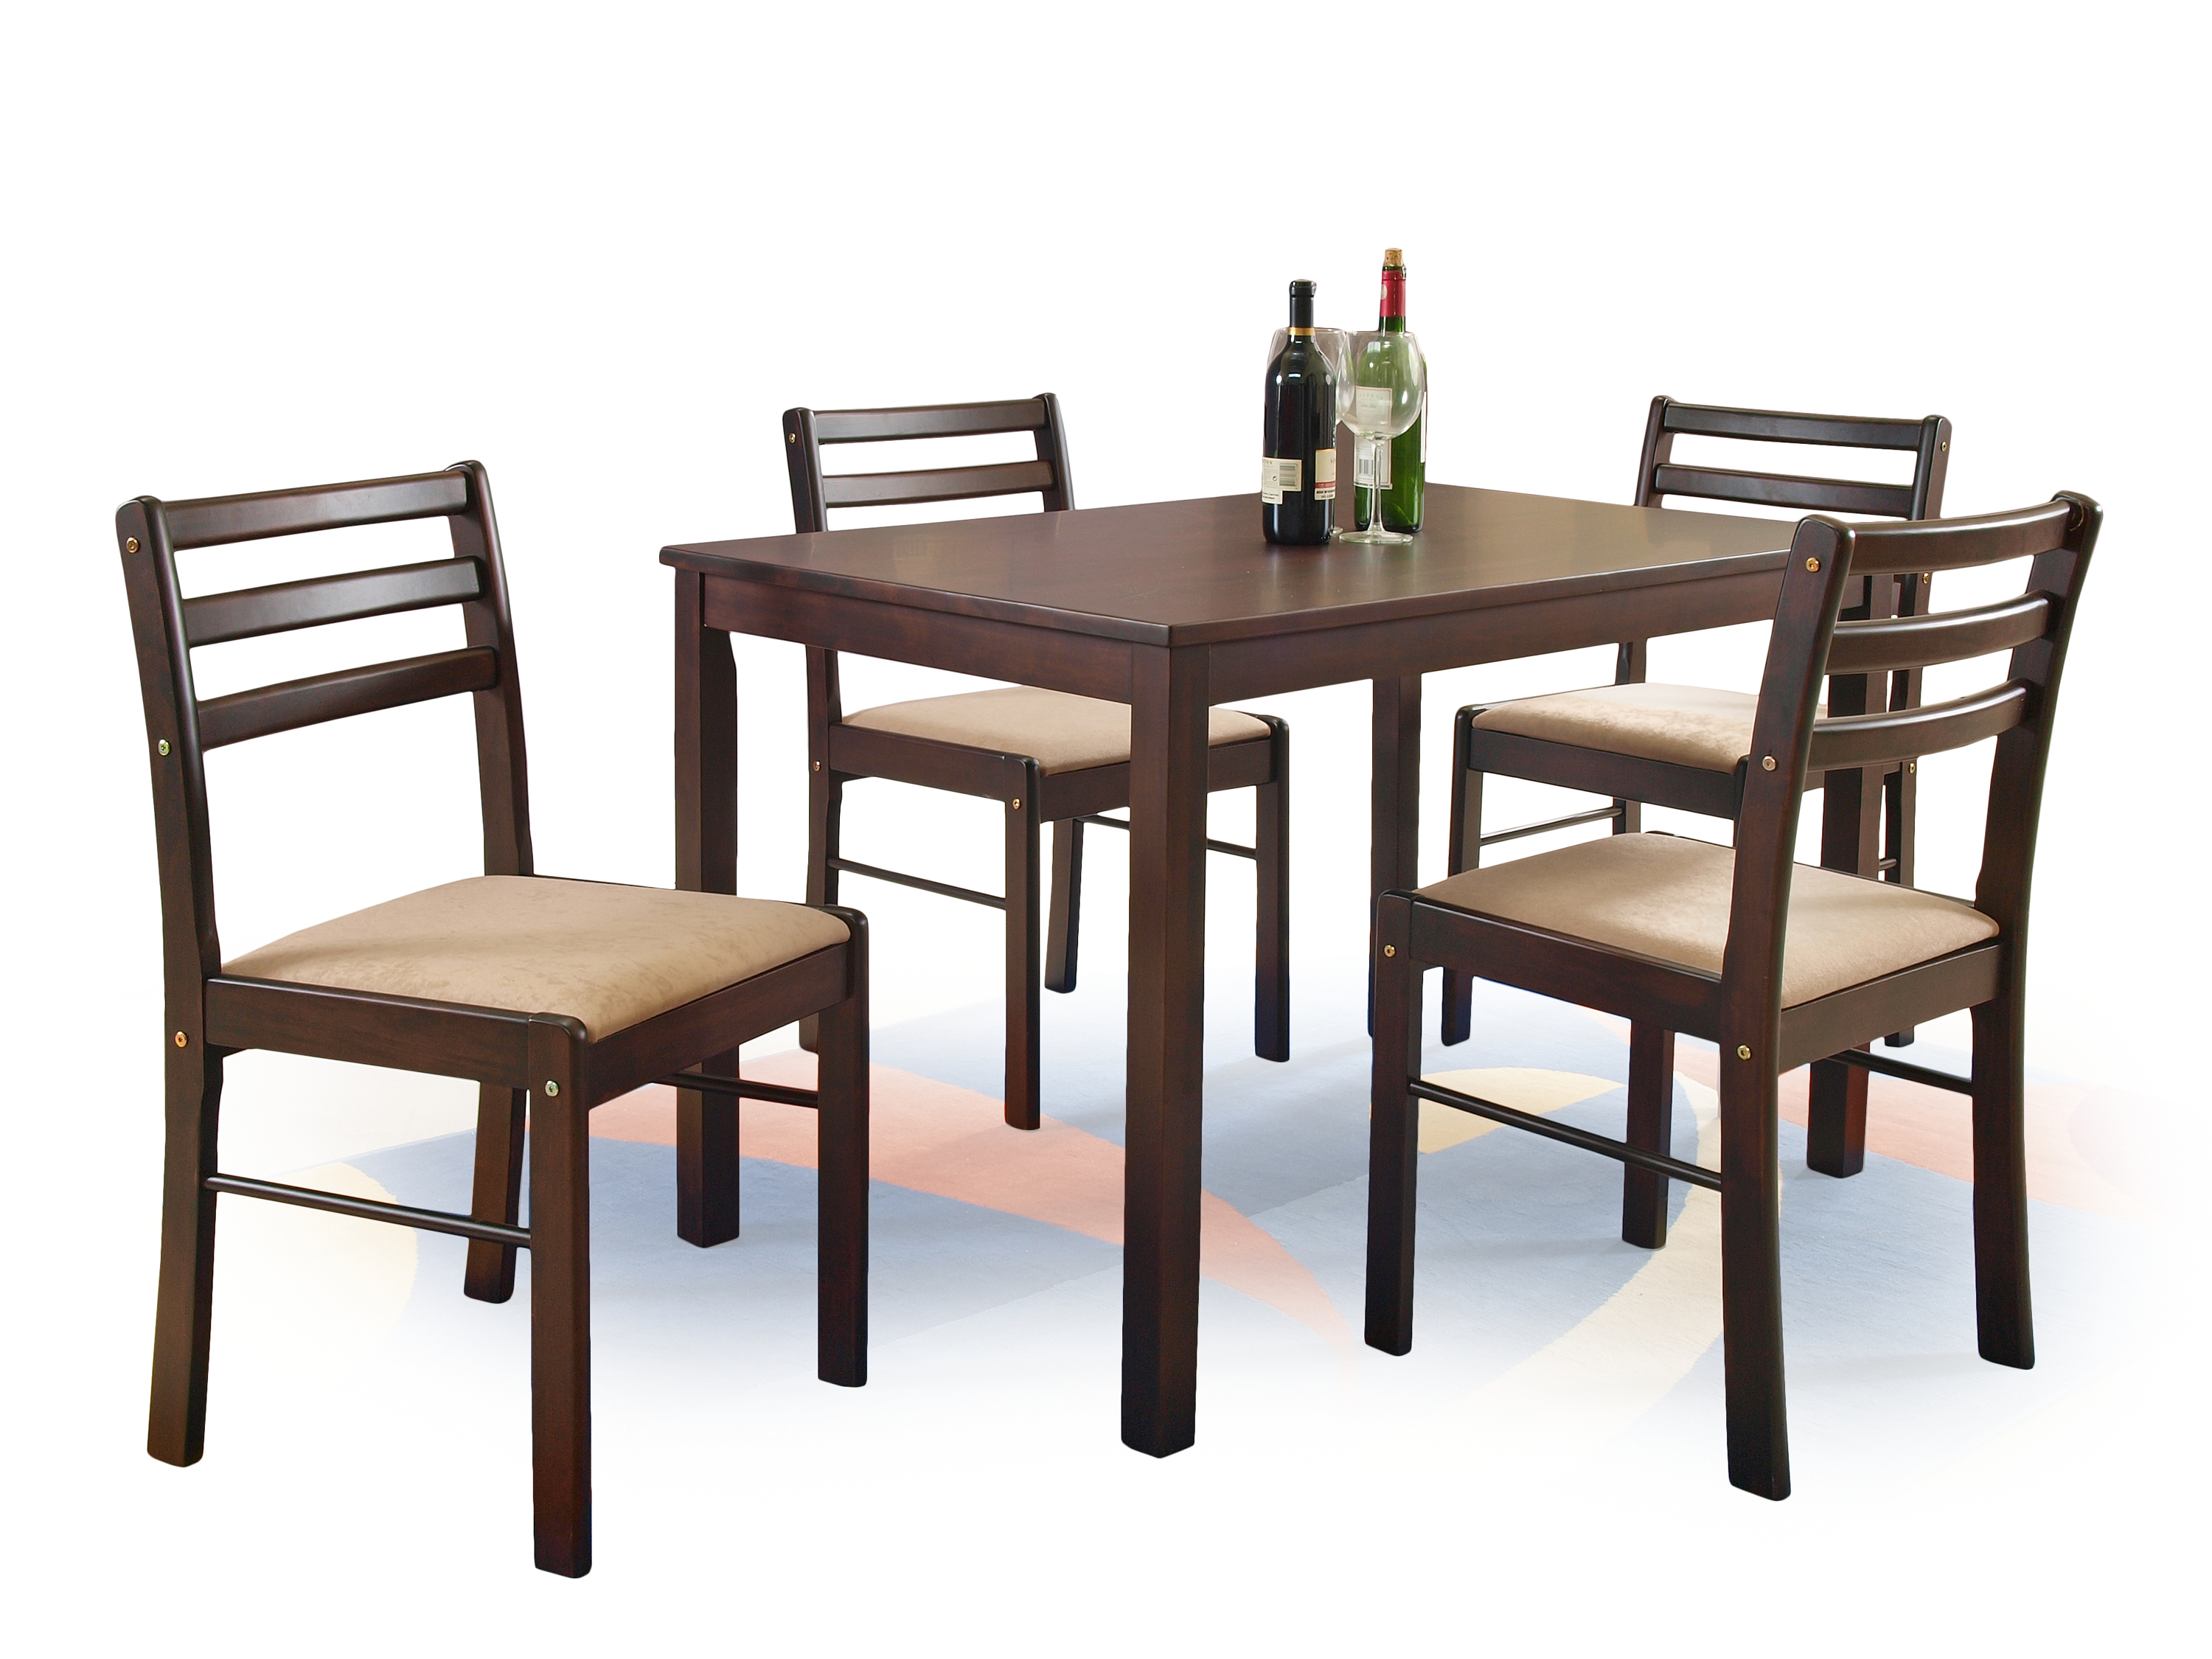 Кухонный комплект стол и стулья. Обеденный набор Halmar Faust (стол + 4 стула). Комплект столовой мебели Halmar Cordoba (стол + 4 стула, дуб). Комплект обеденный Халмар. Мебель stol stul.